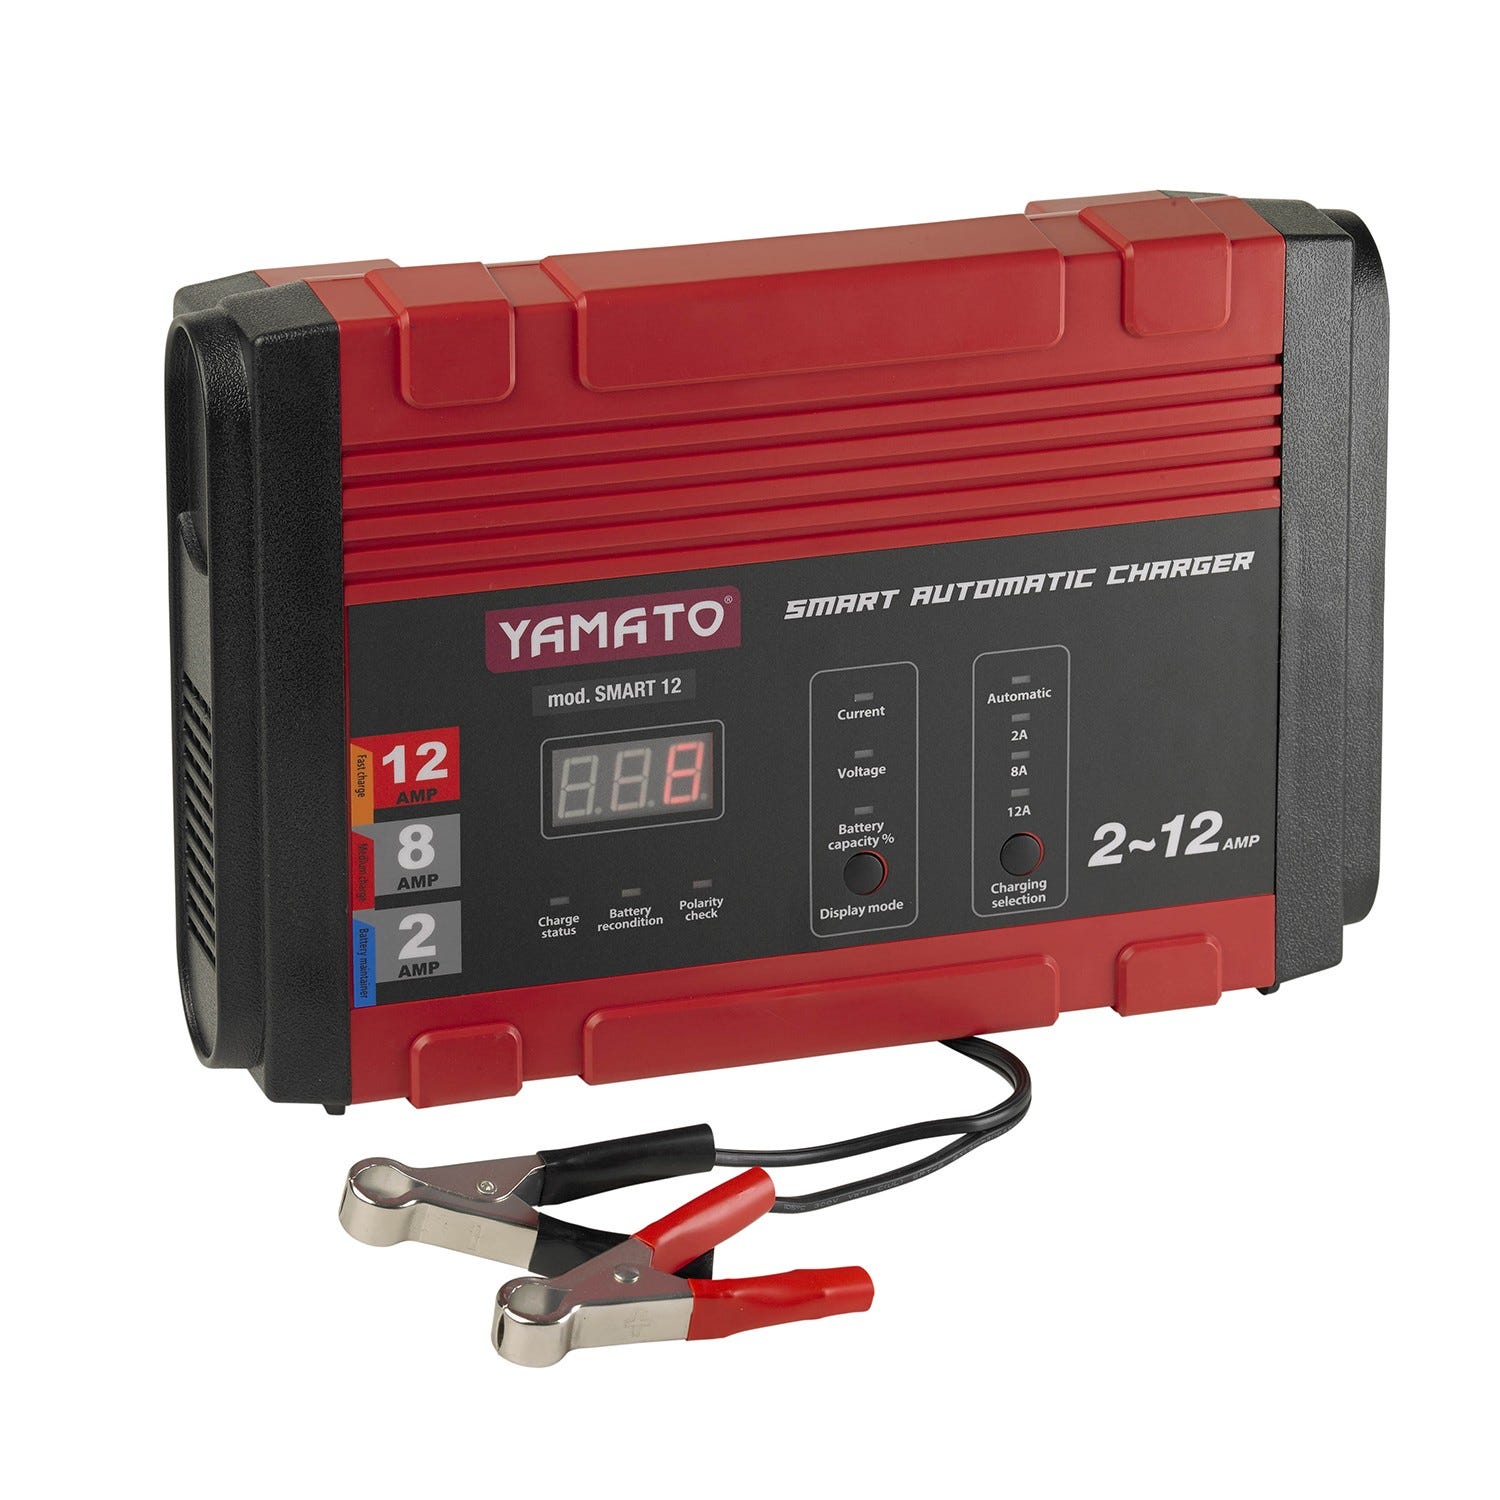 Charge baterias Inverter 12V. / 2 à 12 Amp